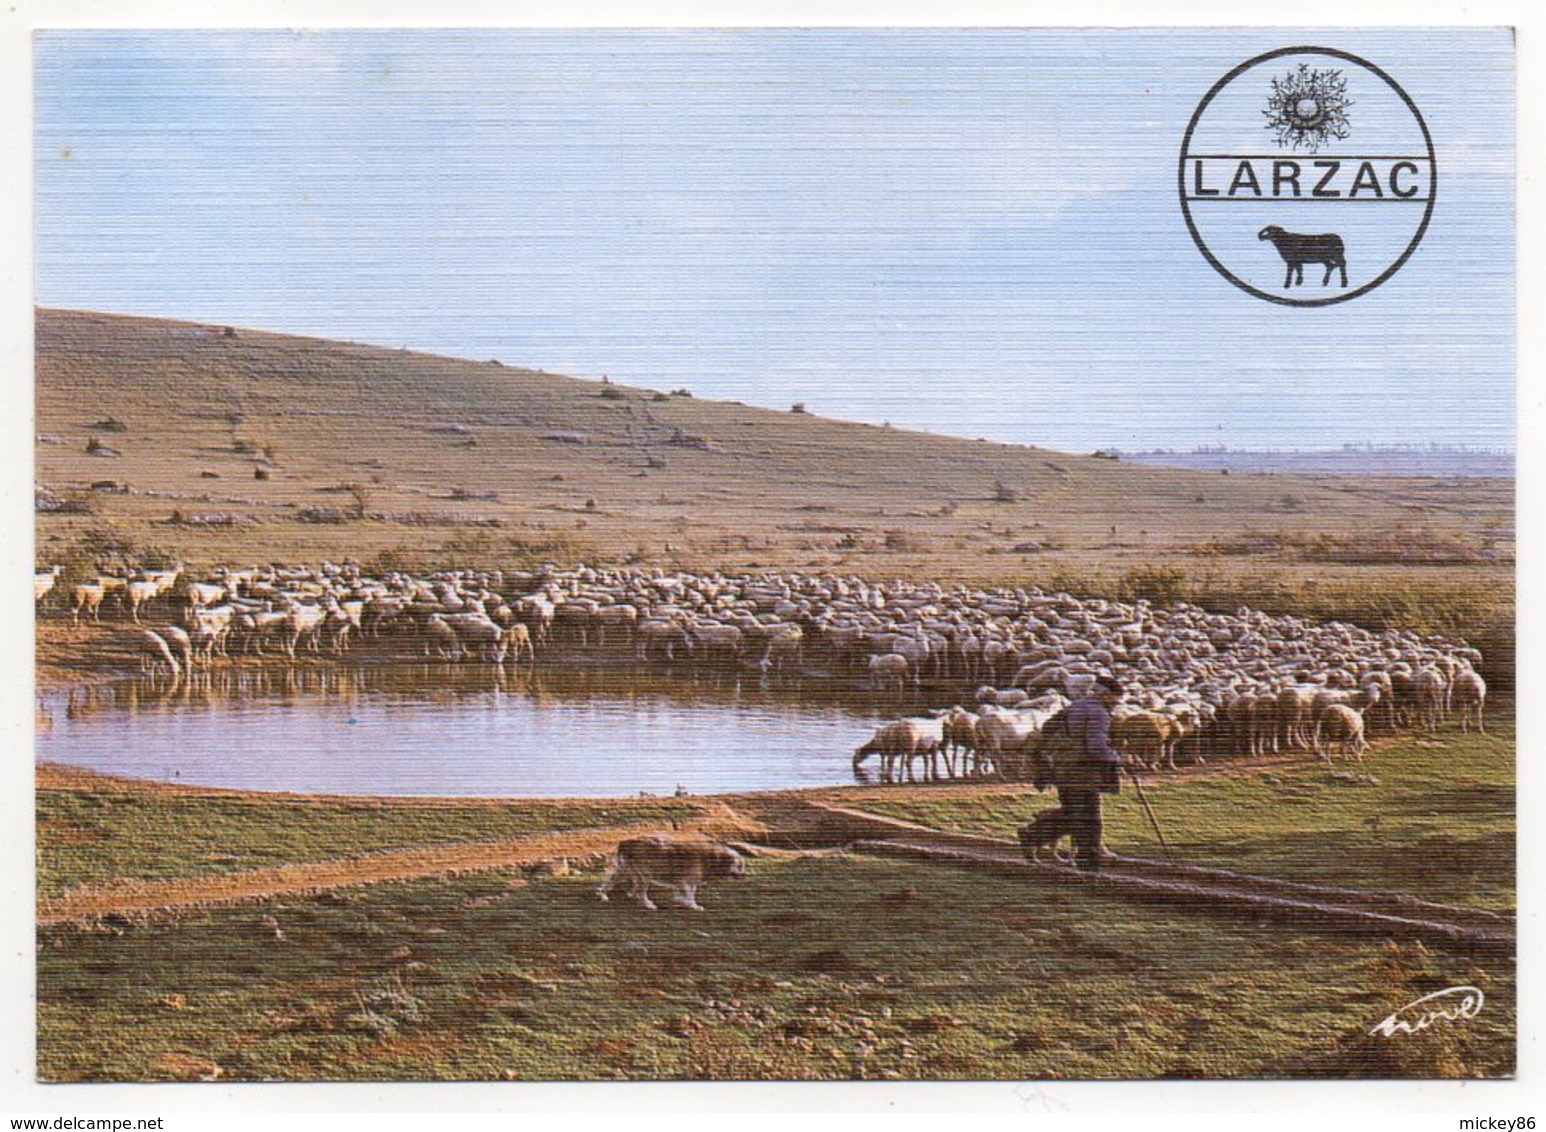 Causse Du Larzac -- Troupeau De Brebis à La "lavogne" (animée,chien,moutons )--carte Toilée - Viehzucht